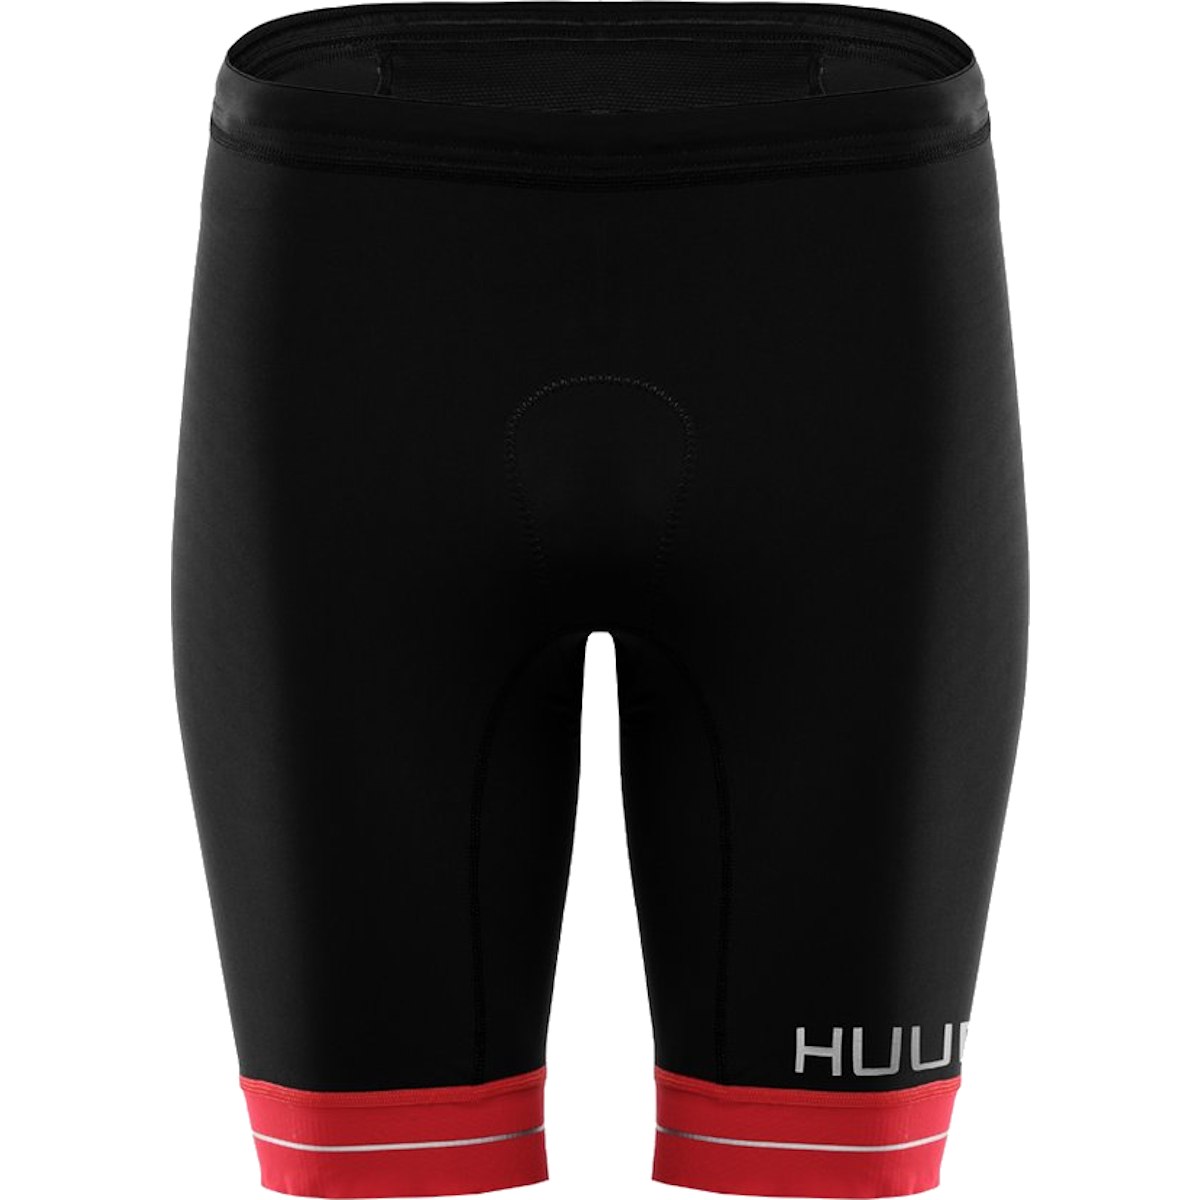 Productfoto van HUUB Design RaceLine Triatlon Broek Kort - zwart/rood